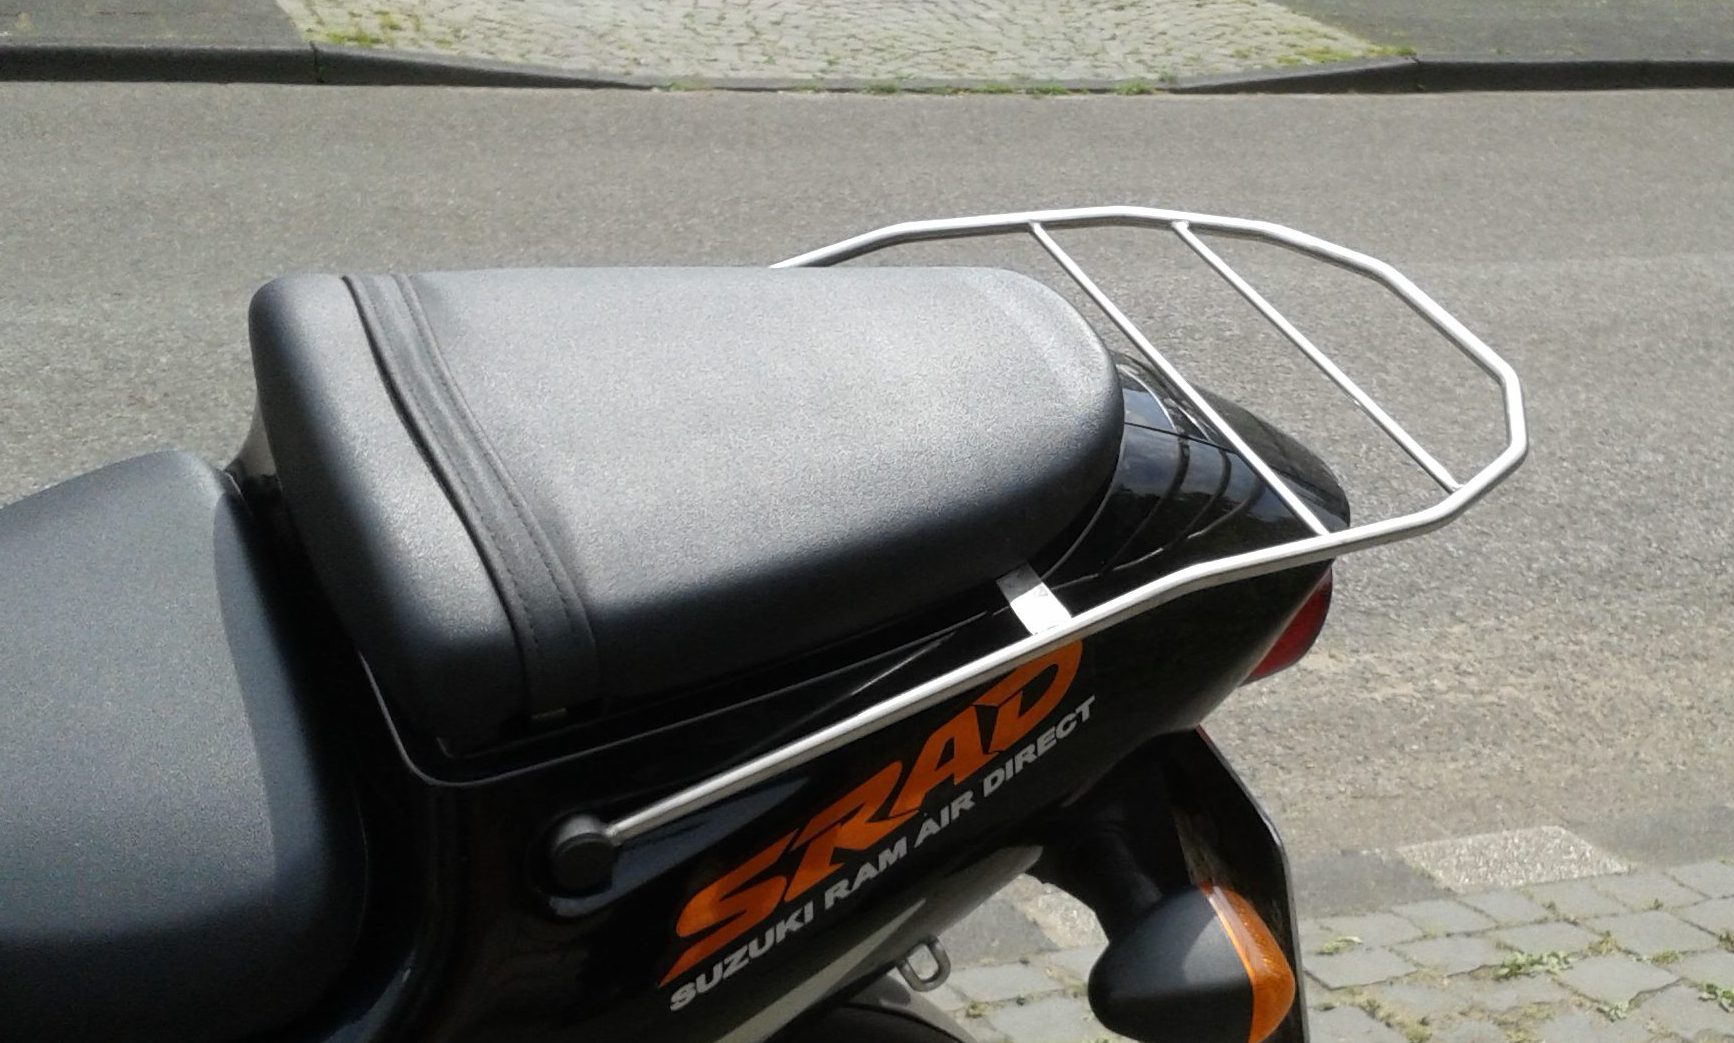 Edelstahl-Gepäckträger für Motorrad